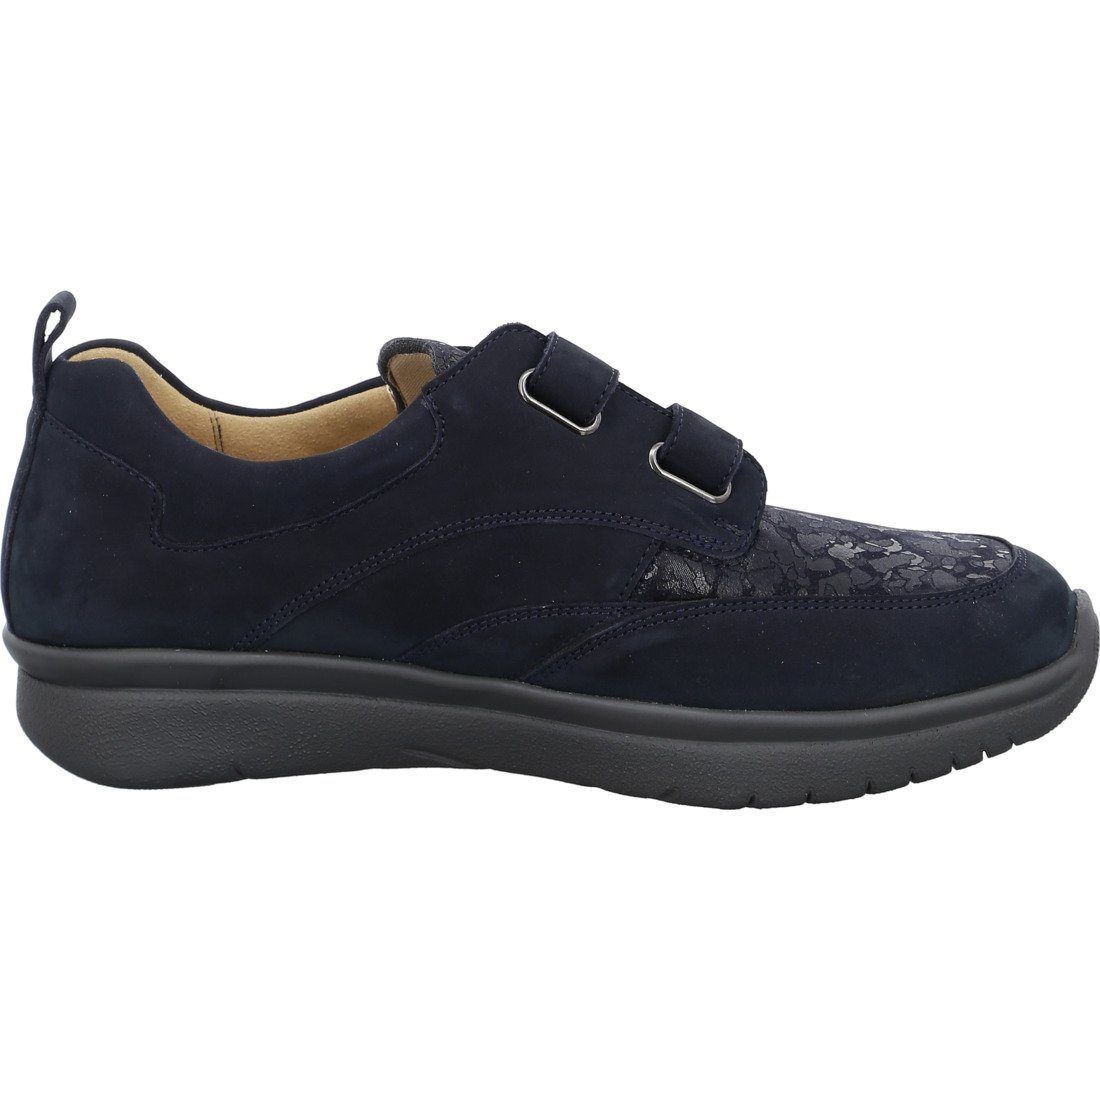 Ganter Ganter Schuhe, Slipper - Leder Damen blau Kira 050509 Slipper